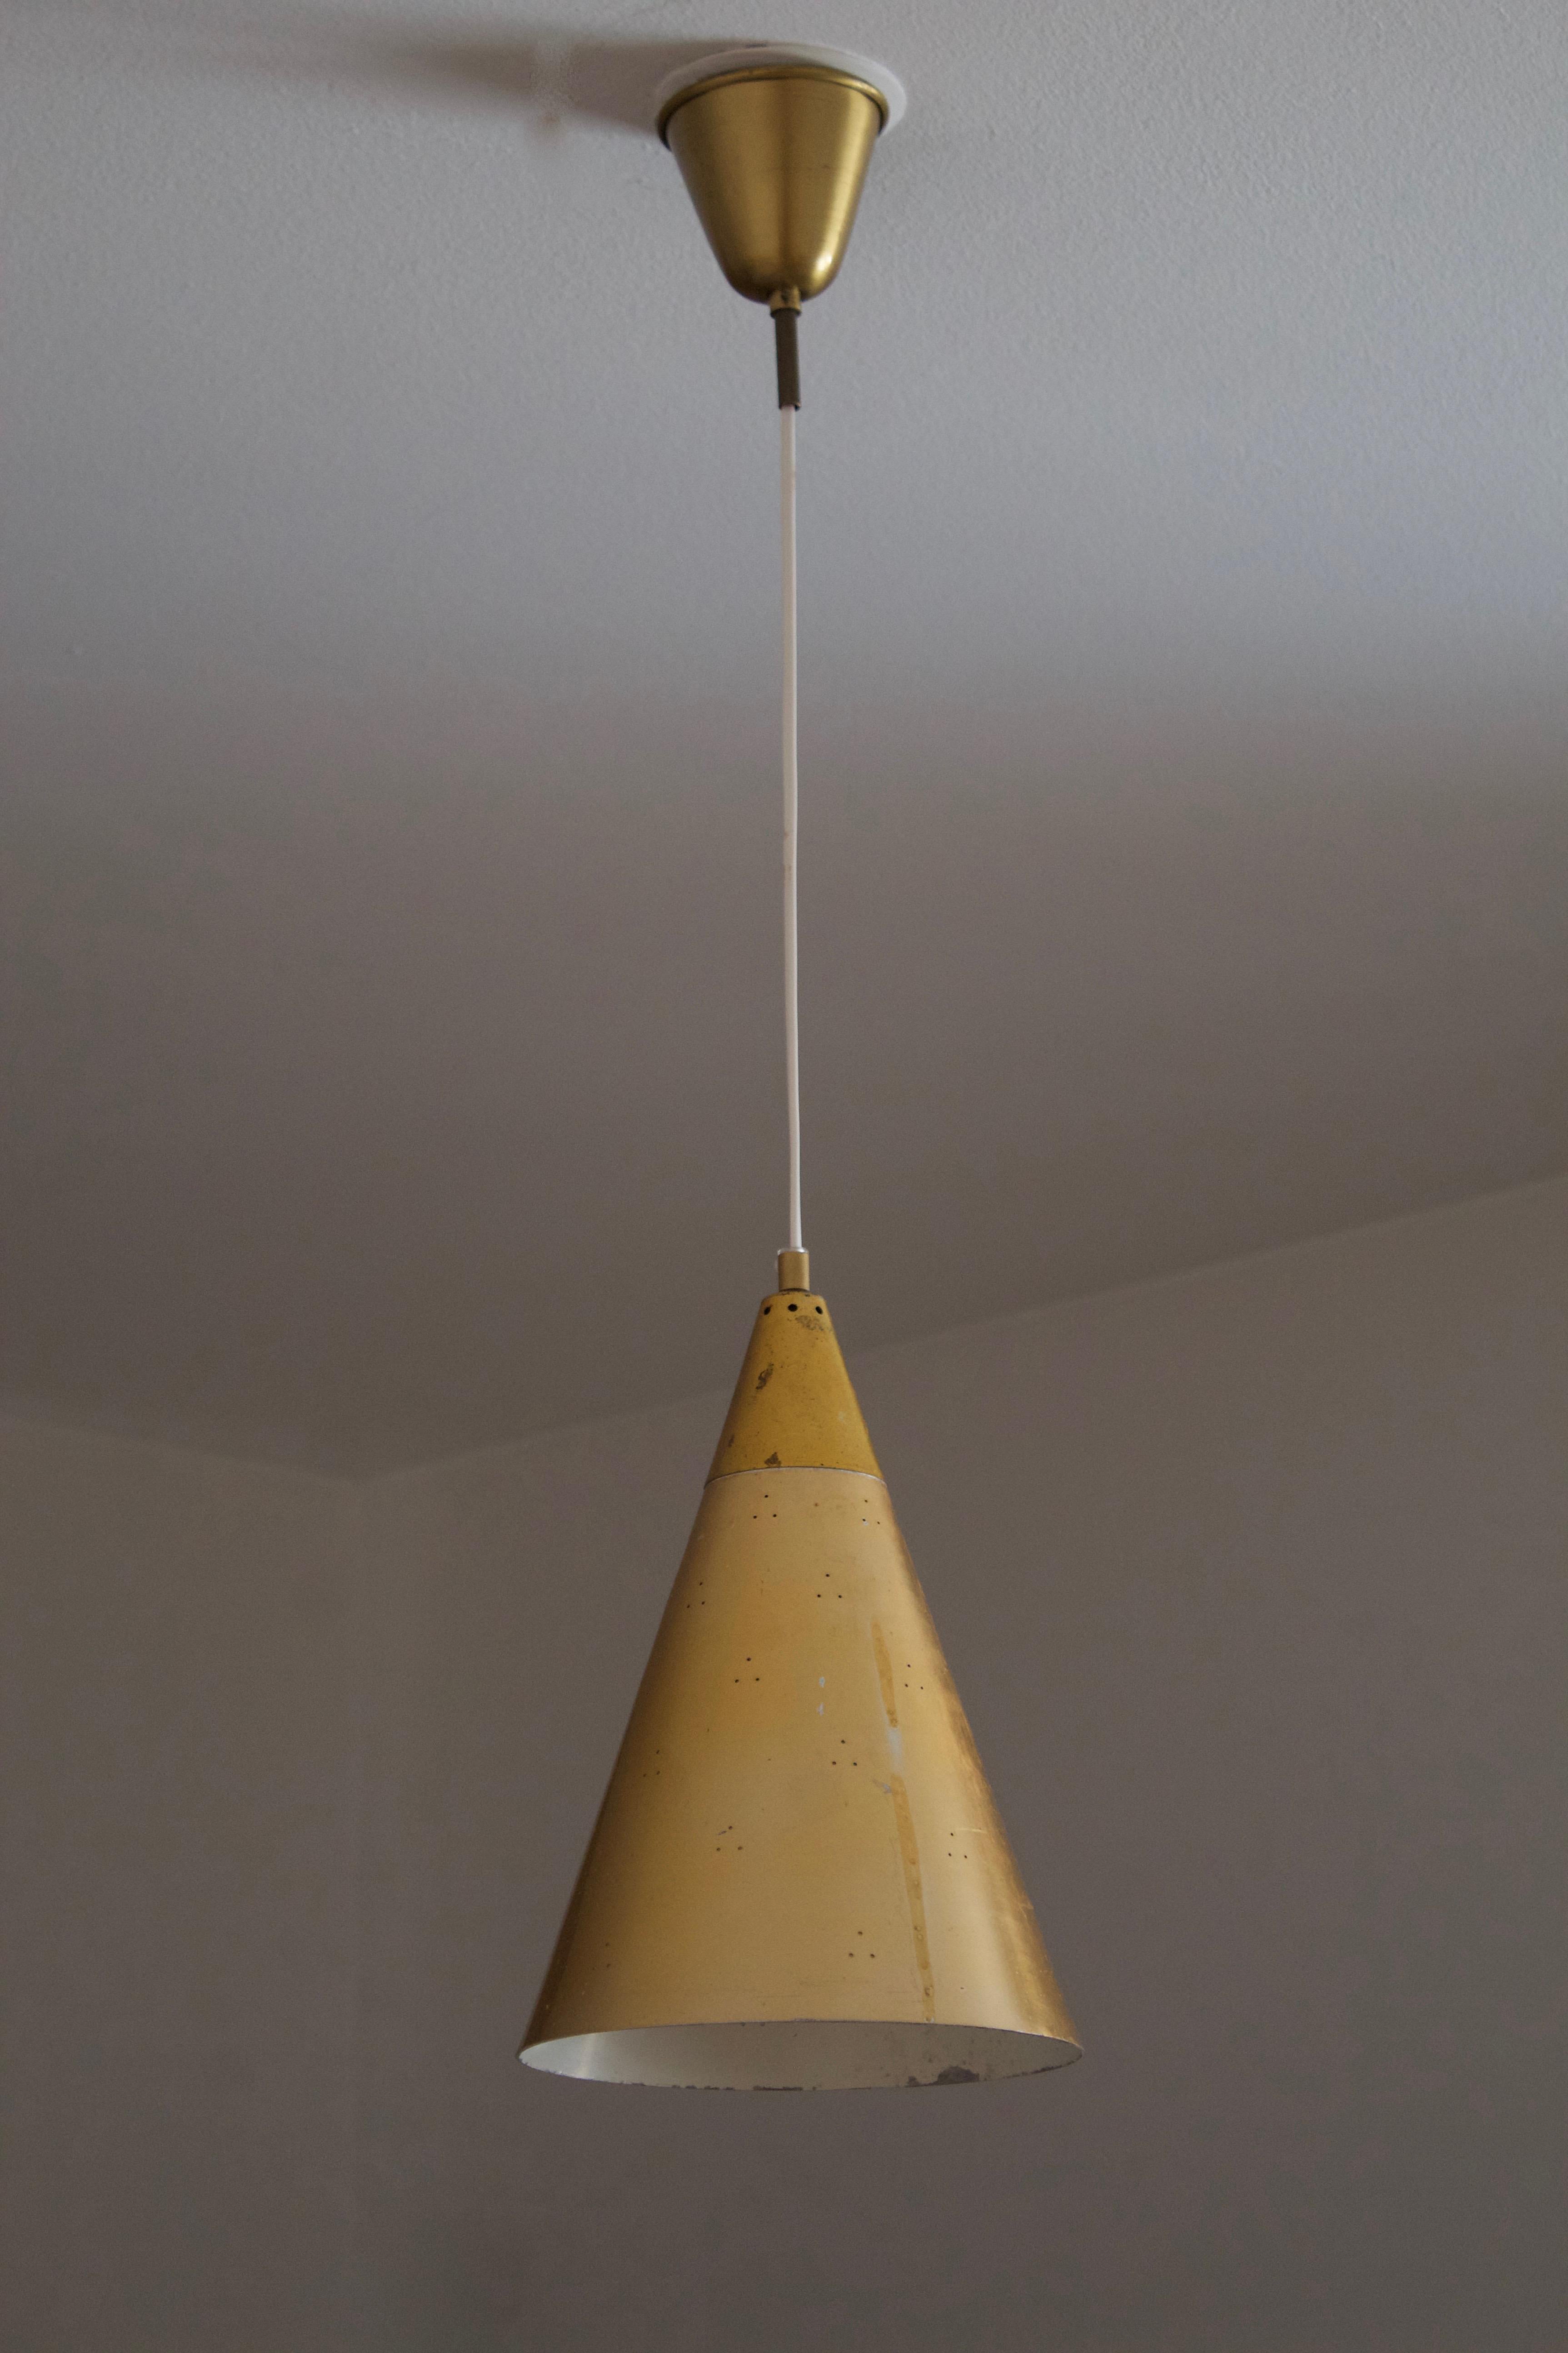 Eine Hängeleuchte / Deckenlampe. Entworfen und hergestellt in Schweden, ca. 1950er Jahre.

Höhe mit vollem Gefälle und Becher 86 cm / 33.85 inches.